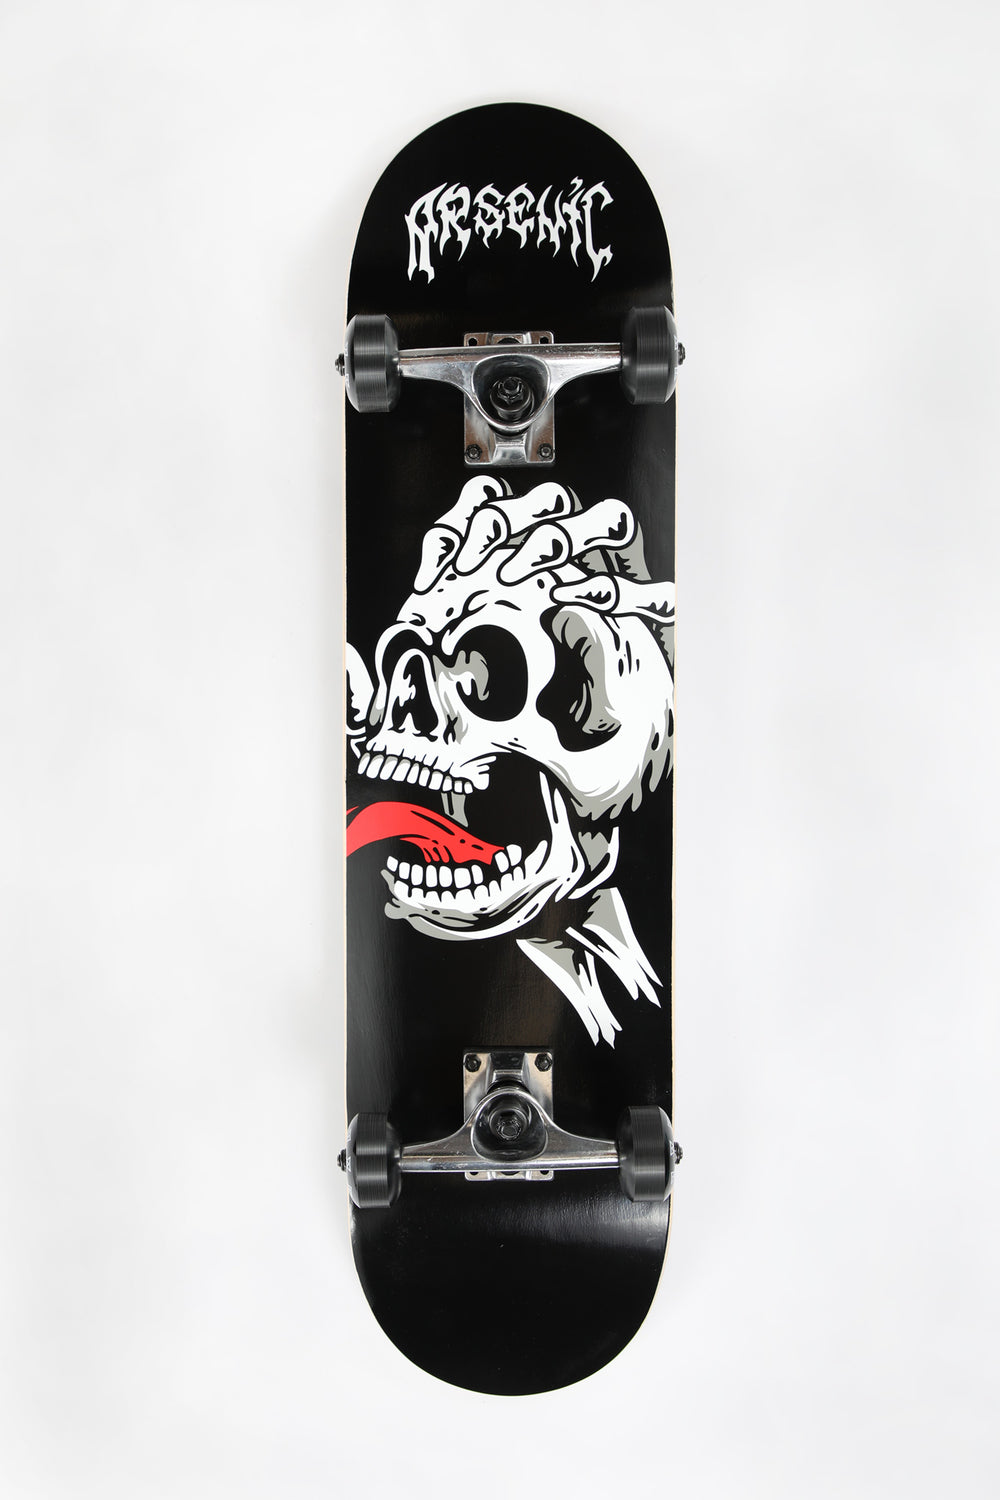 Arsenic Skull Hand Skateboard 7.75